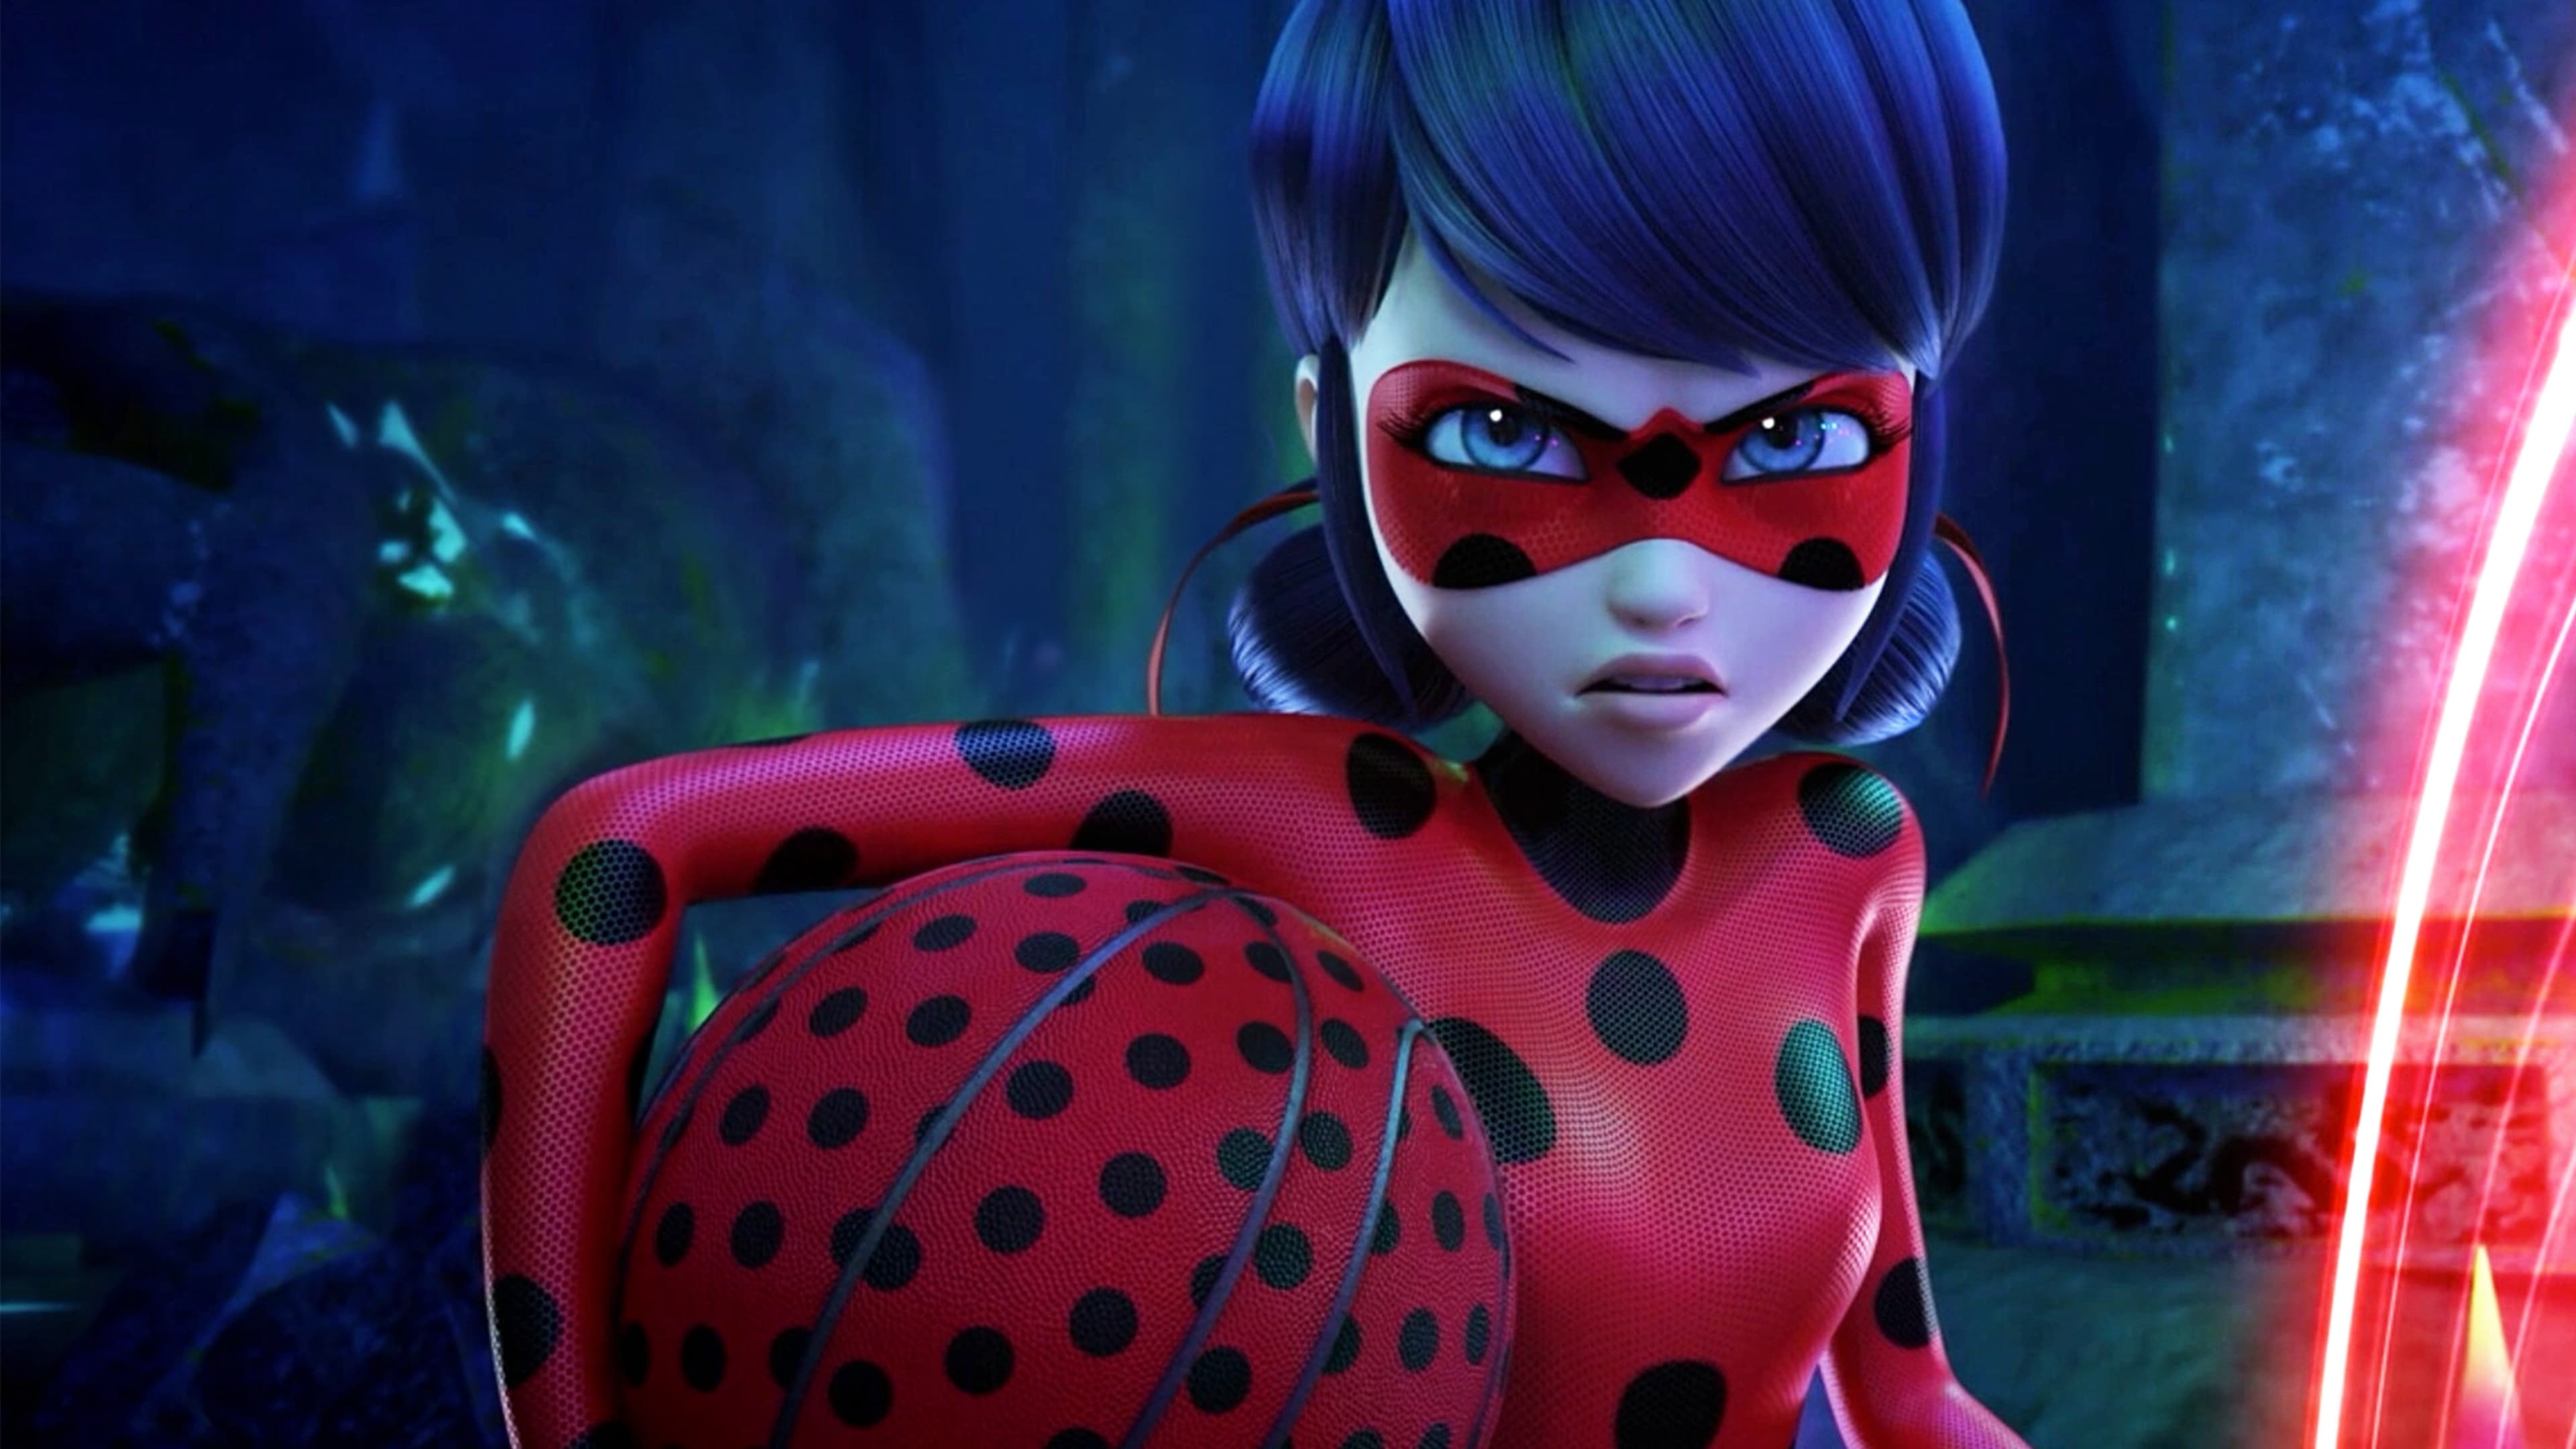 Miraculous ladybug shanghai full movie